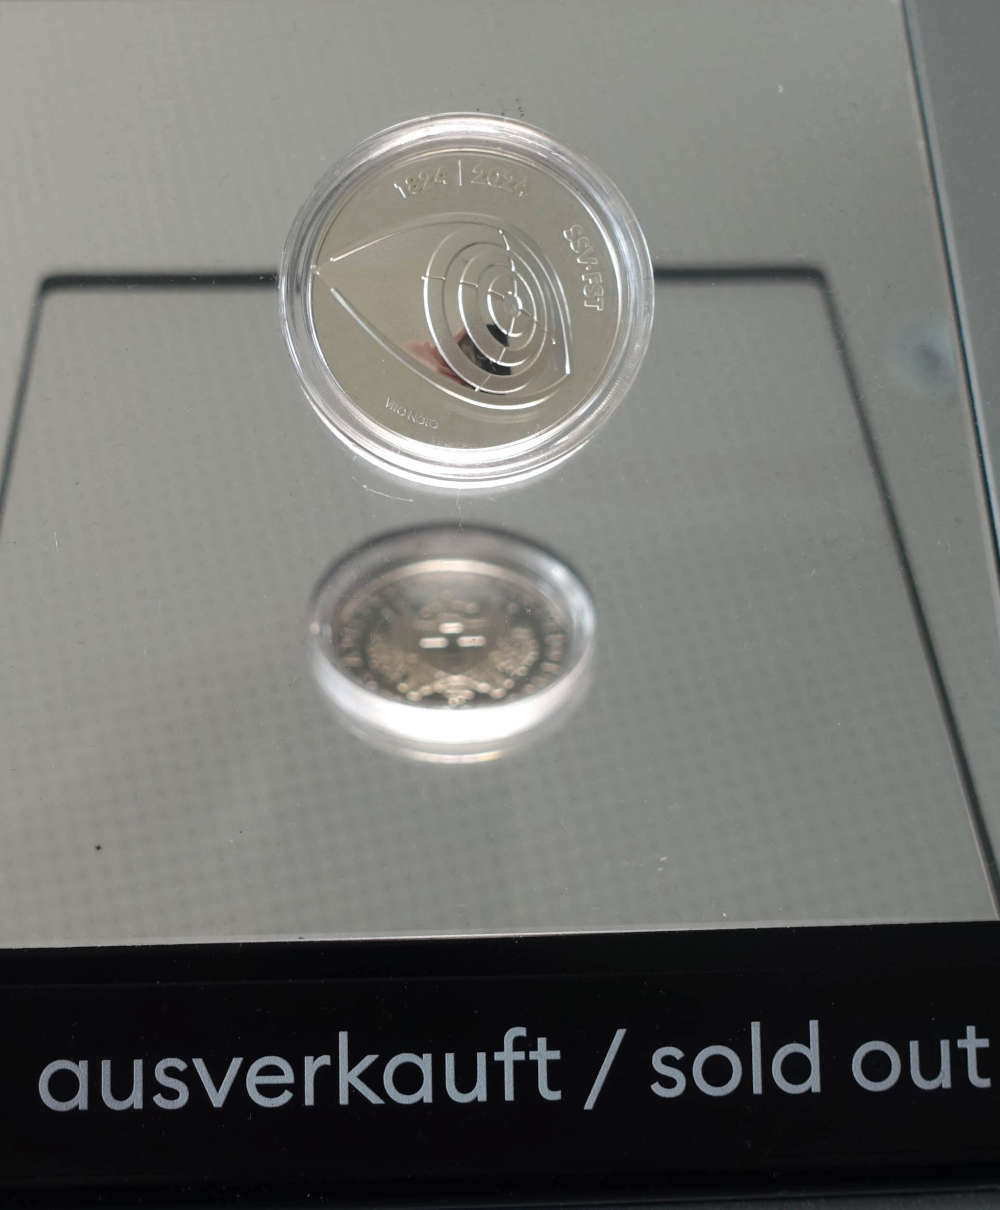 Nach kürzester Zeit komplett ausverkauft: Die Hochreliefprägung zur 20 Franken-Silbermünze „Schweizer Schiesssportverband. Foto: UK.